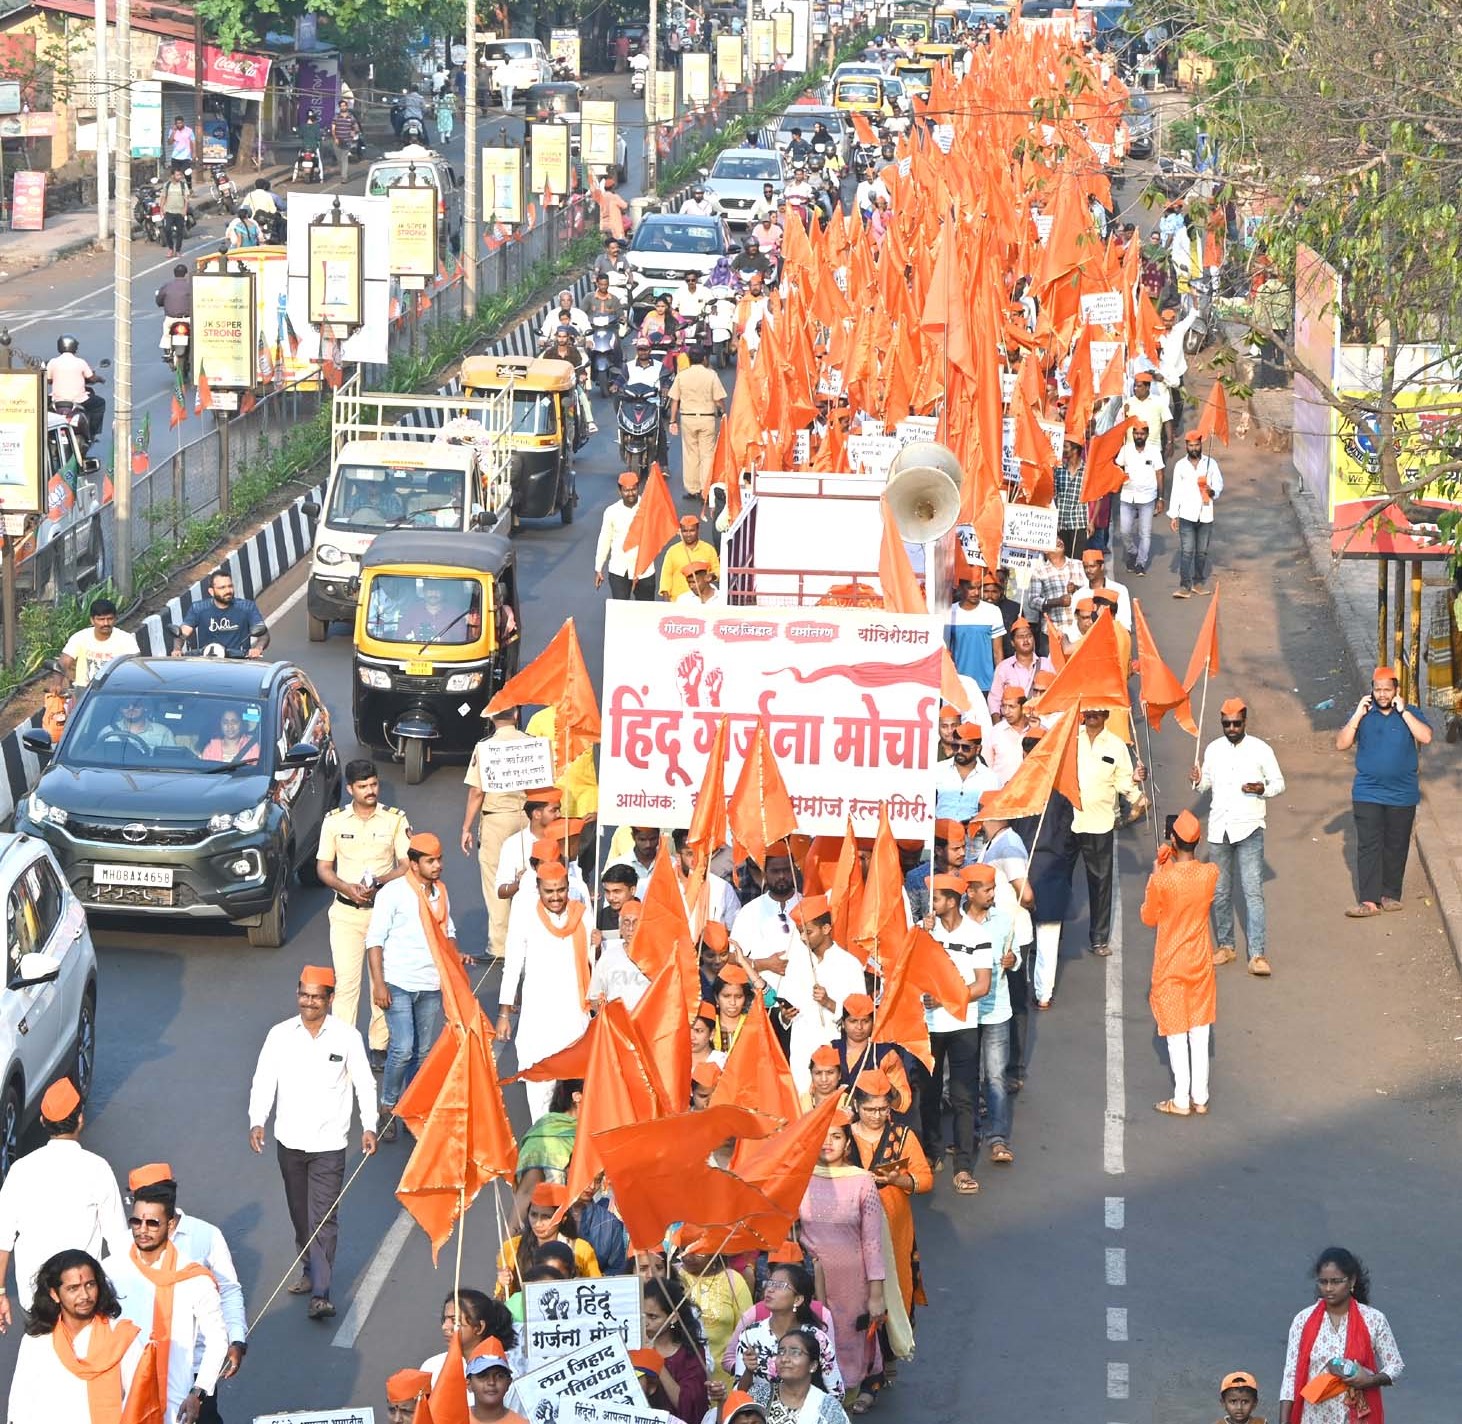 Grand Hindu roar march by Hindu community